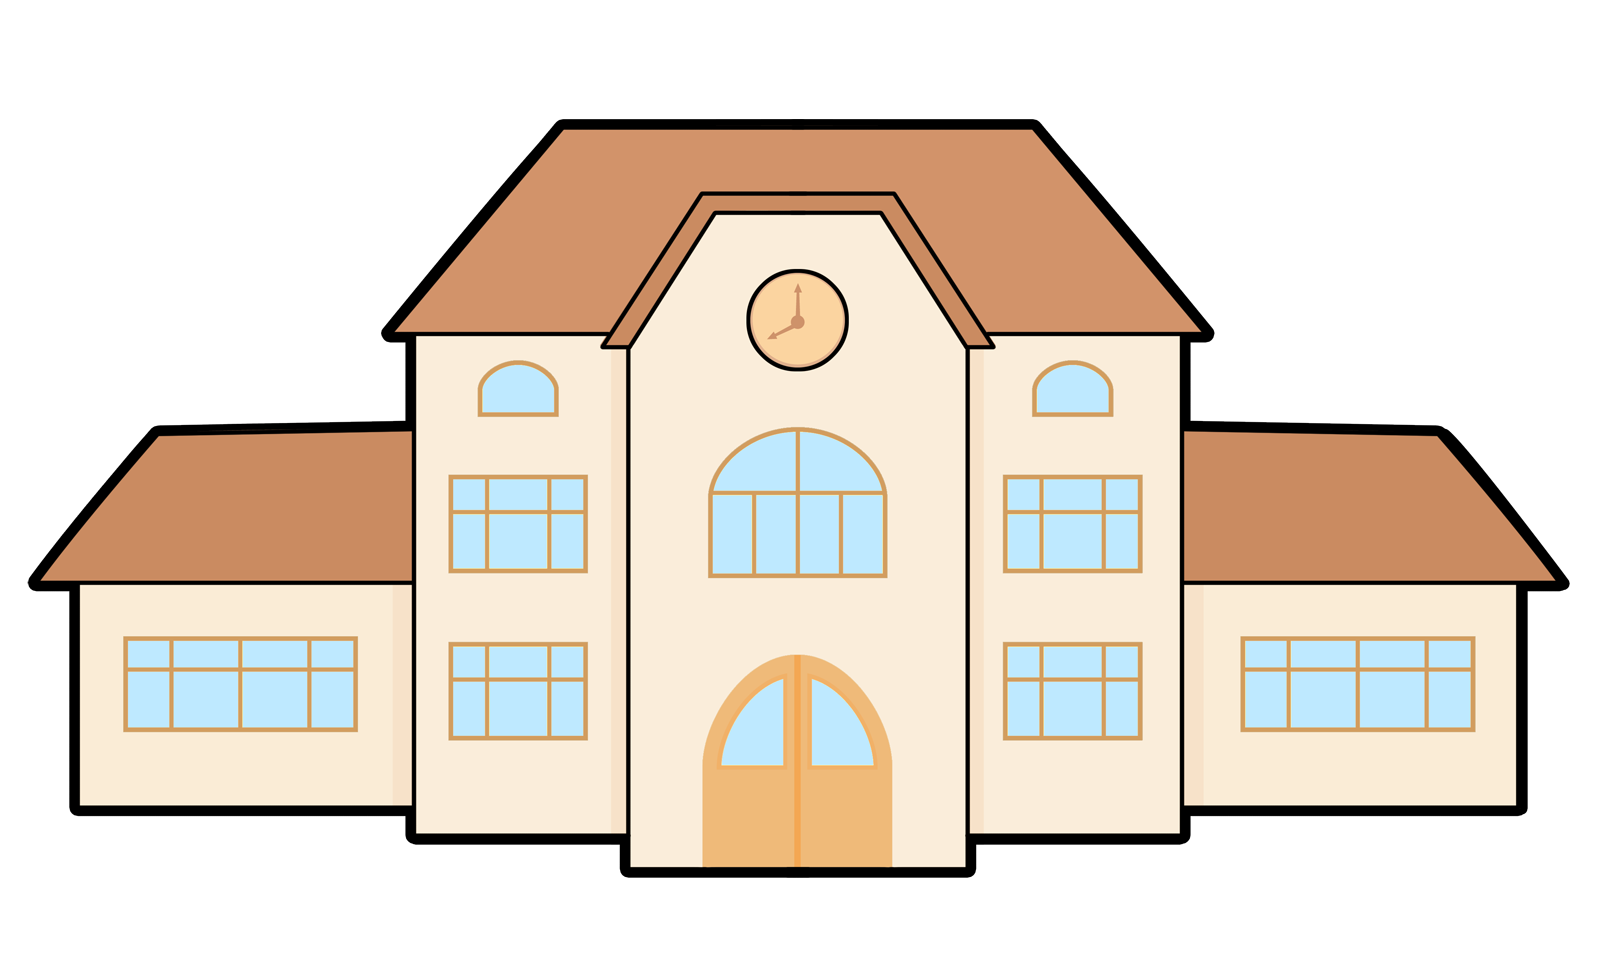 Location school library building